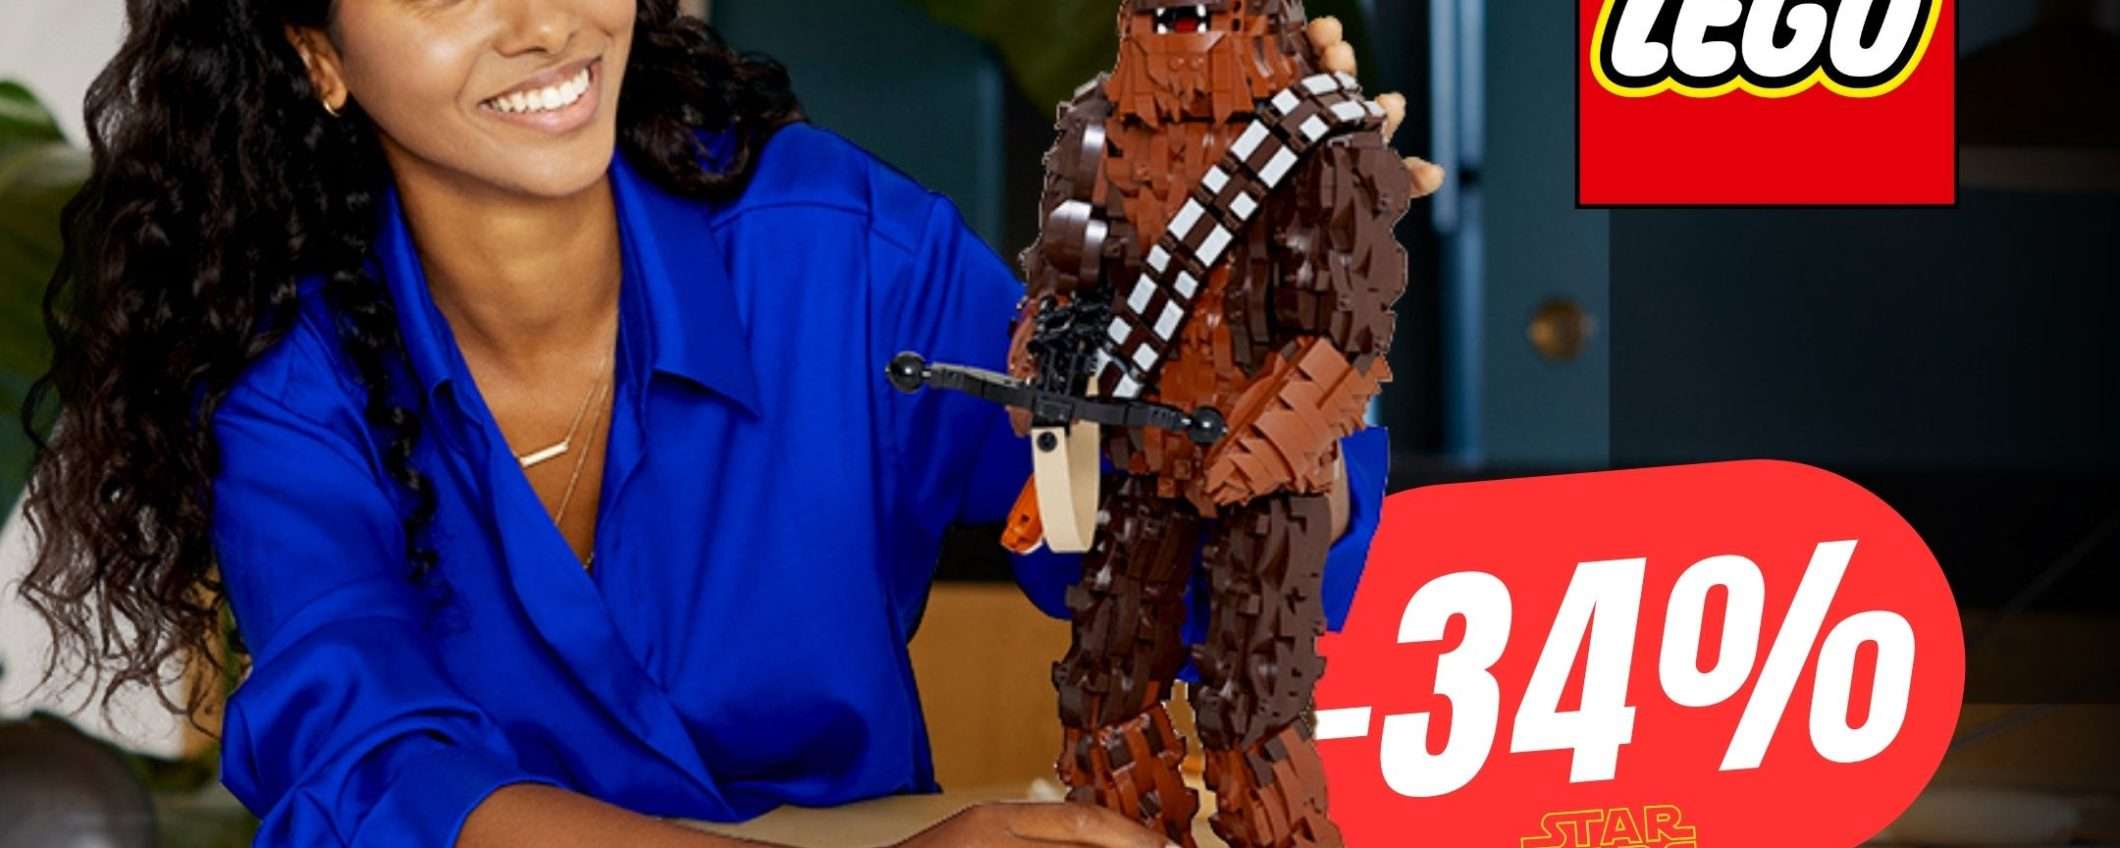 L'enorme Statuetta di Chewbacca LEGO è SCONTATA su Amazon!